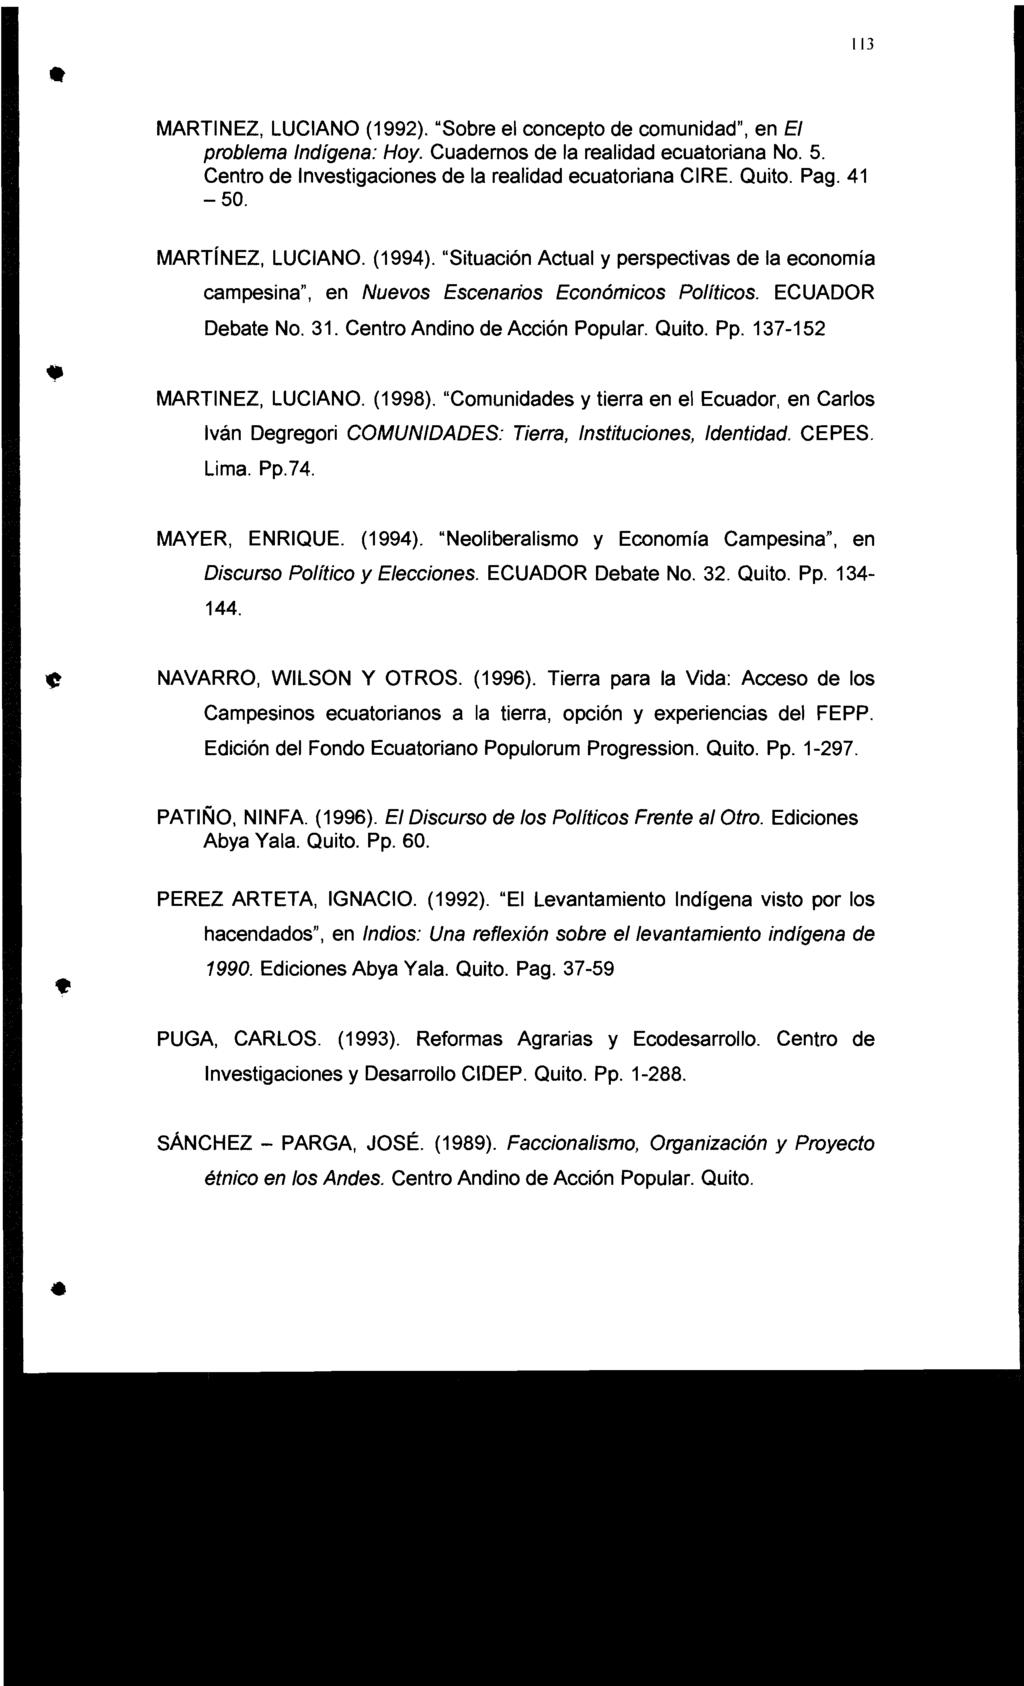 MARTINEZ, LUCIANO (1992). "Sobre el concepto de comunidad", en El problema Indígena: Hoy. Cuadernos de la realidad ecuatoriana No. 5. Centro de Investigaciones de la realidad ecuatoriana CIRE. Quito.